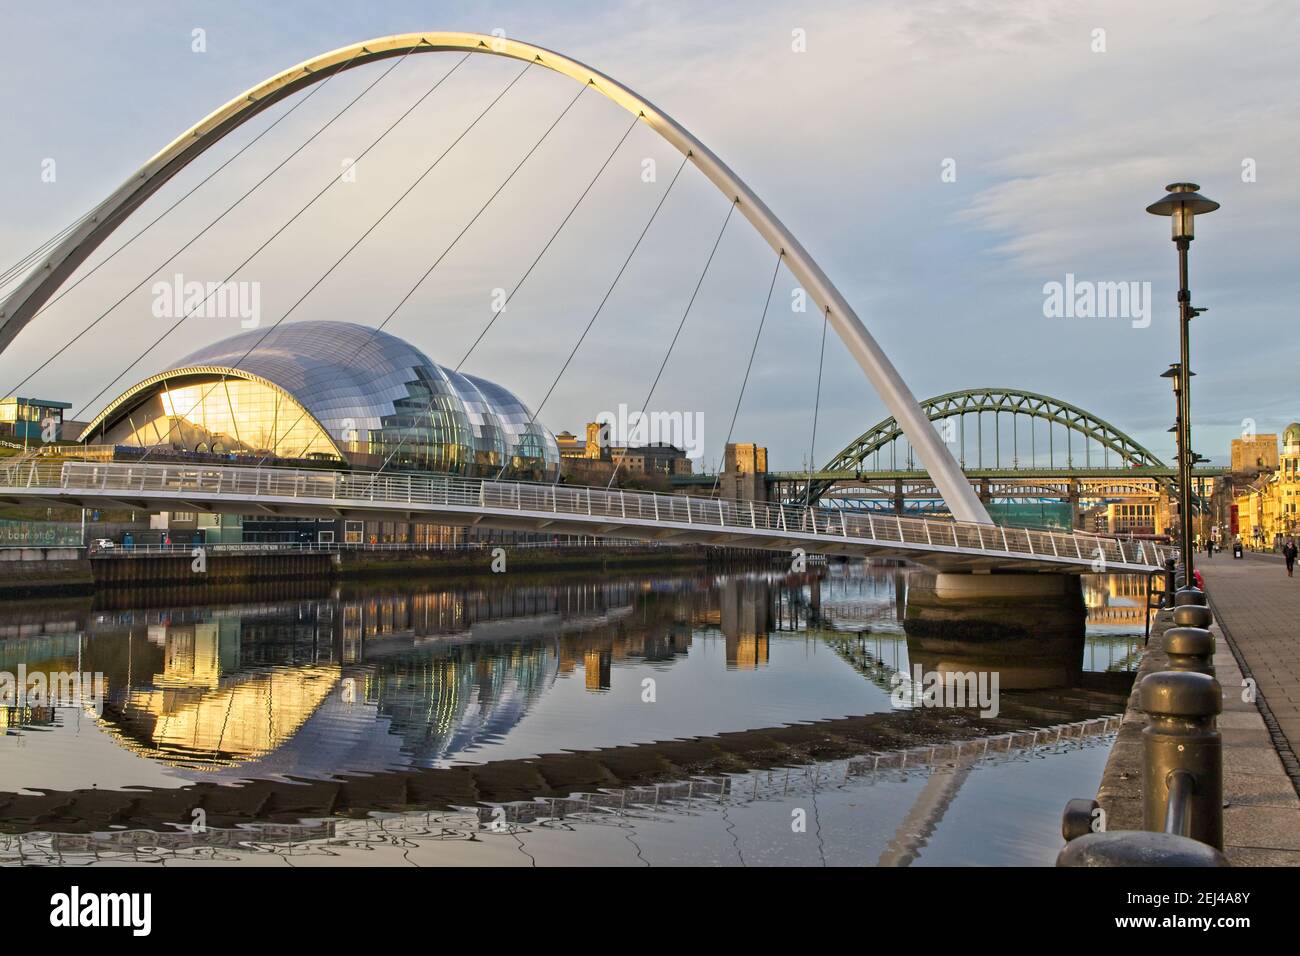 Die Gateshead Millennium Bridge, das Sage Center und die Tyne Bridge wurden am frühen Morgen von Newcastles Quayside in Tyne and Wear, Großbritannien, eingefangen Stockfoto